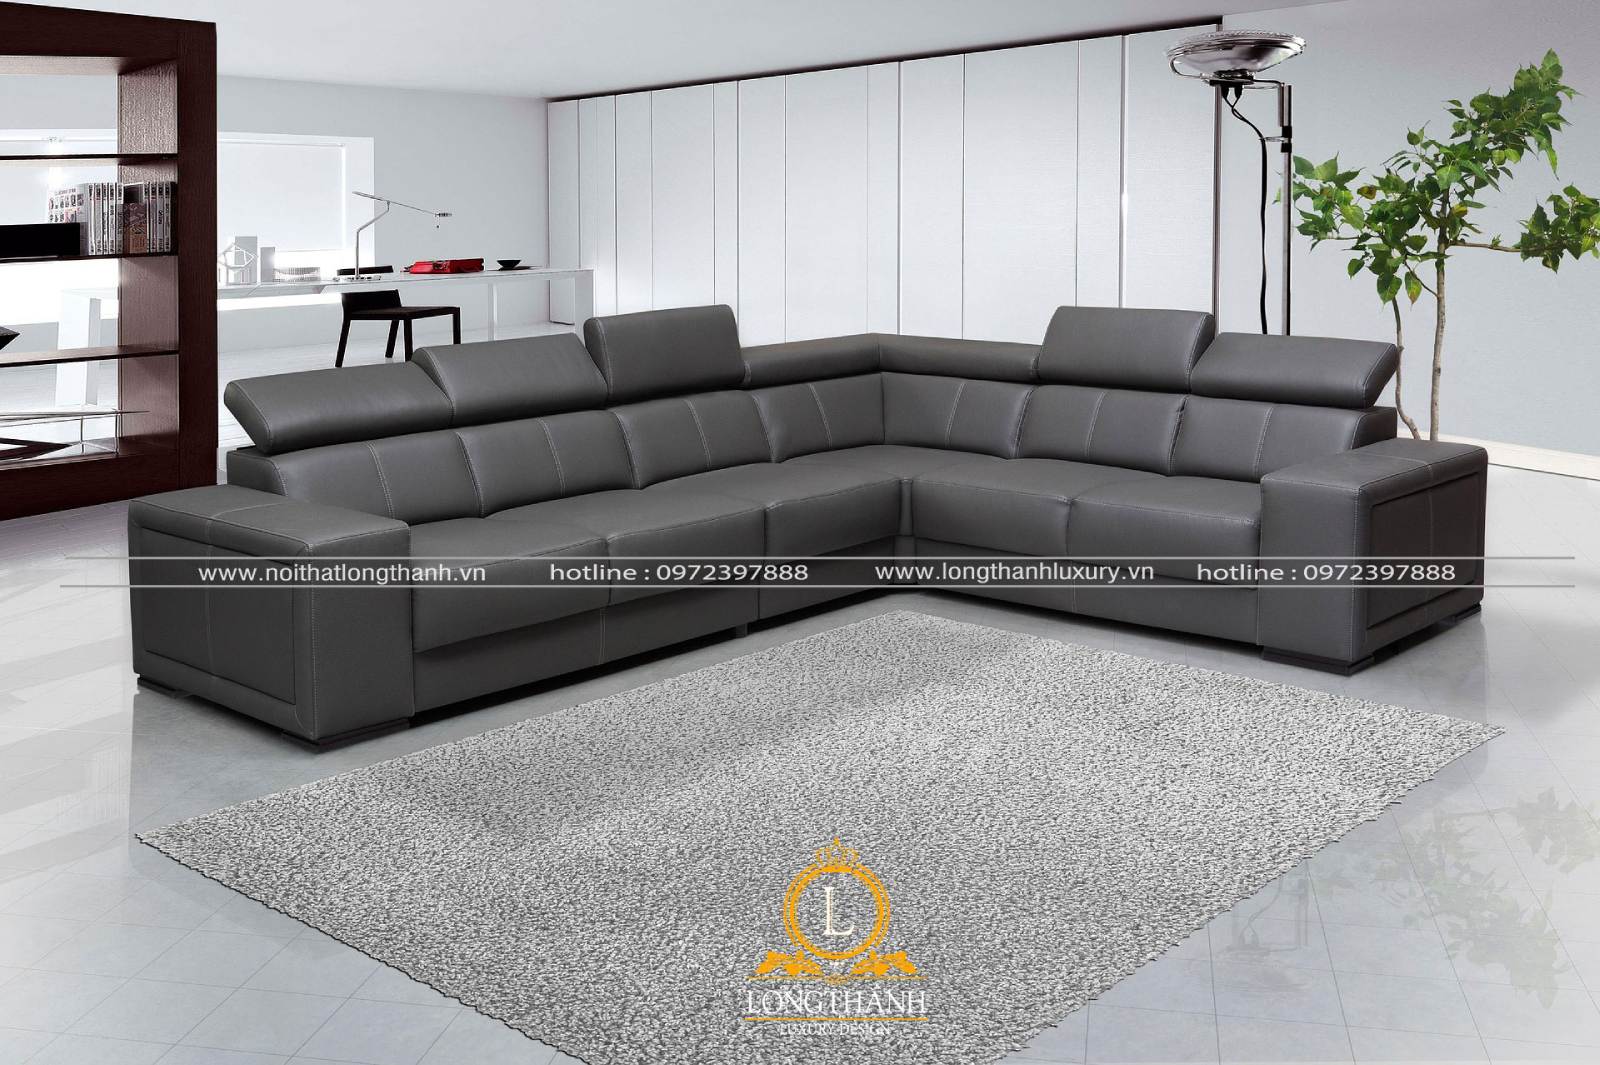 Bộ sofa phòng khách biệt thự theo kiểu hiện đại hình chữ L